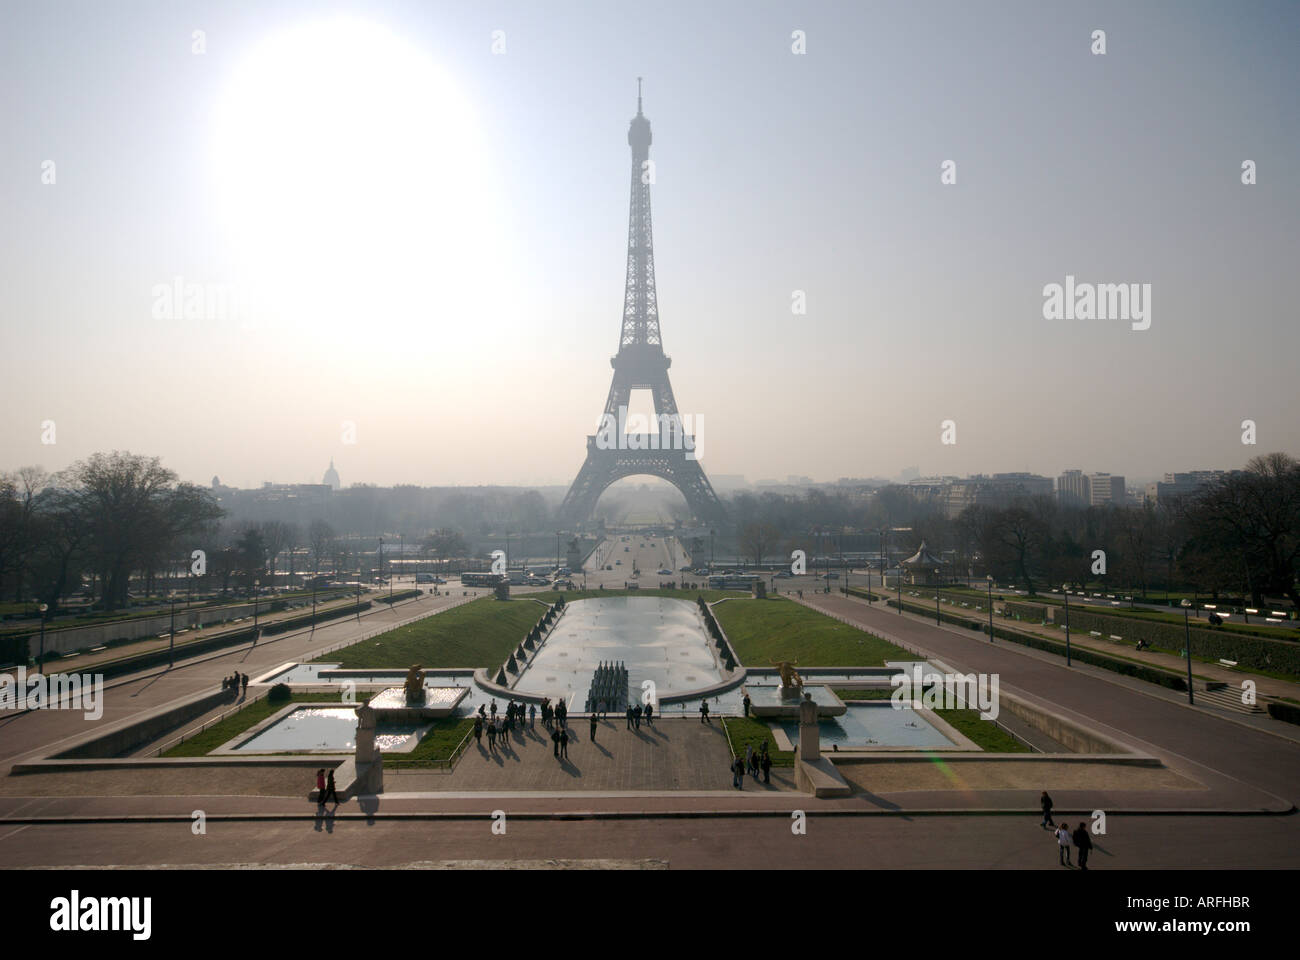 La tour Eiffel vue de la place du Trocadéro Banque D'Images